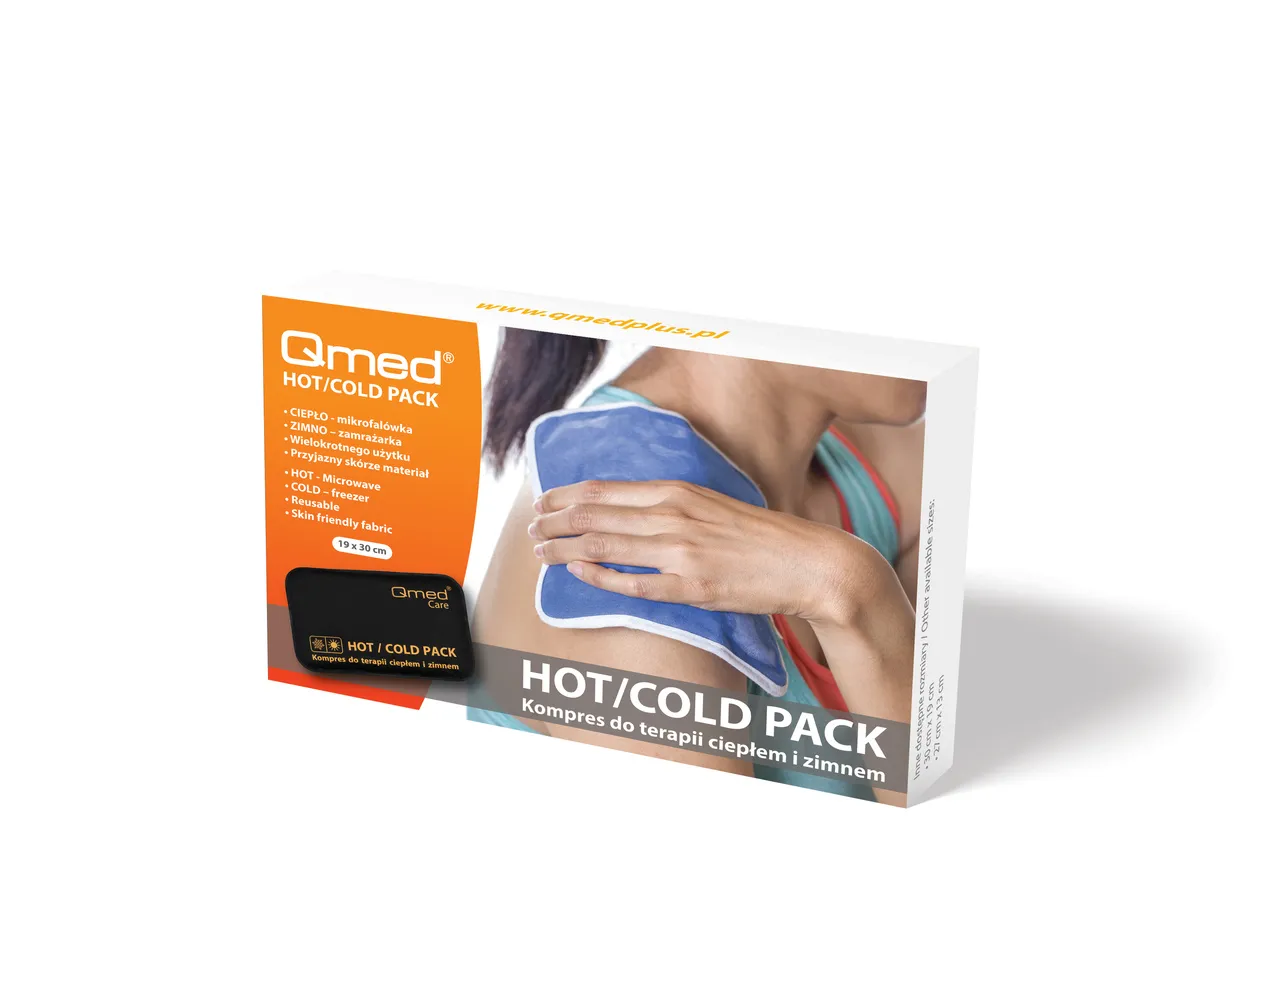 Qmed Hot Cold Pack kompres do terapii ciepłem i zimnem 20x30 cm, 1 szt. 